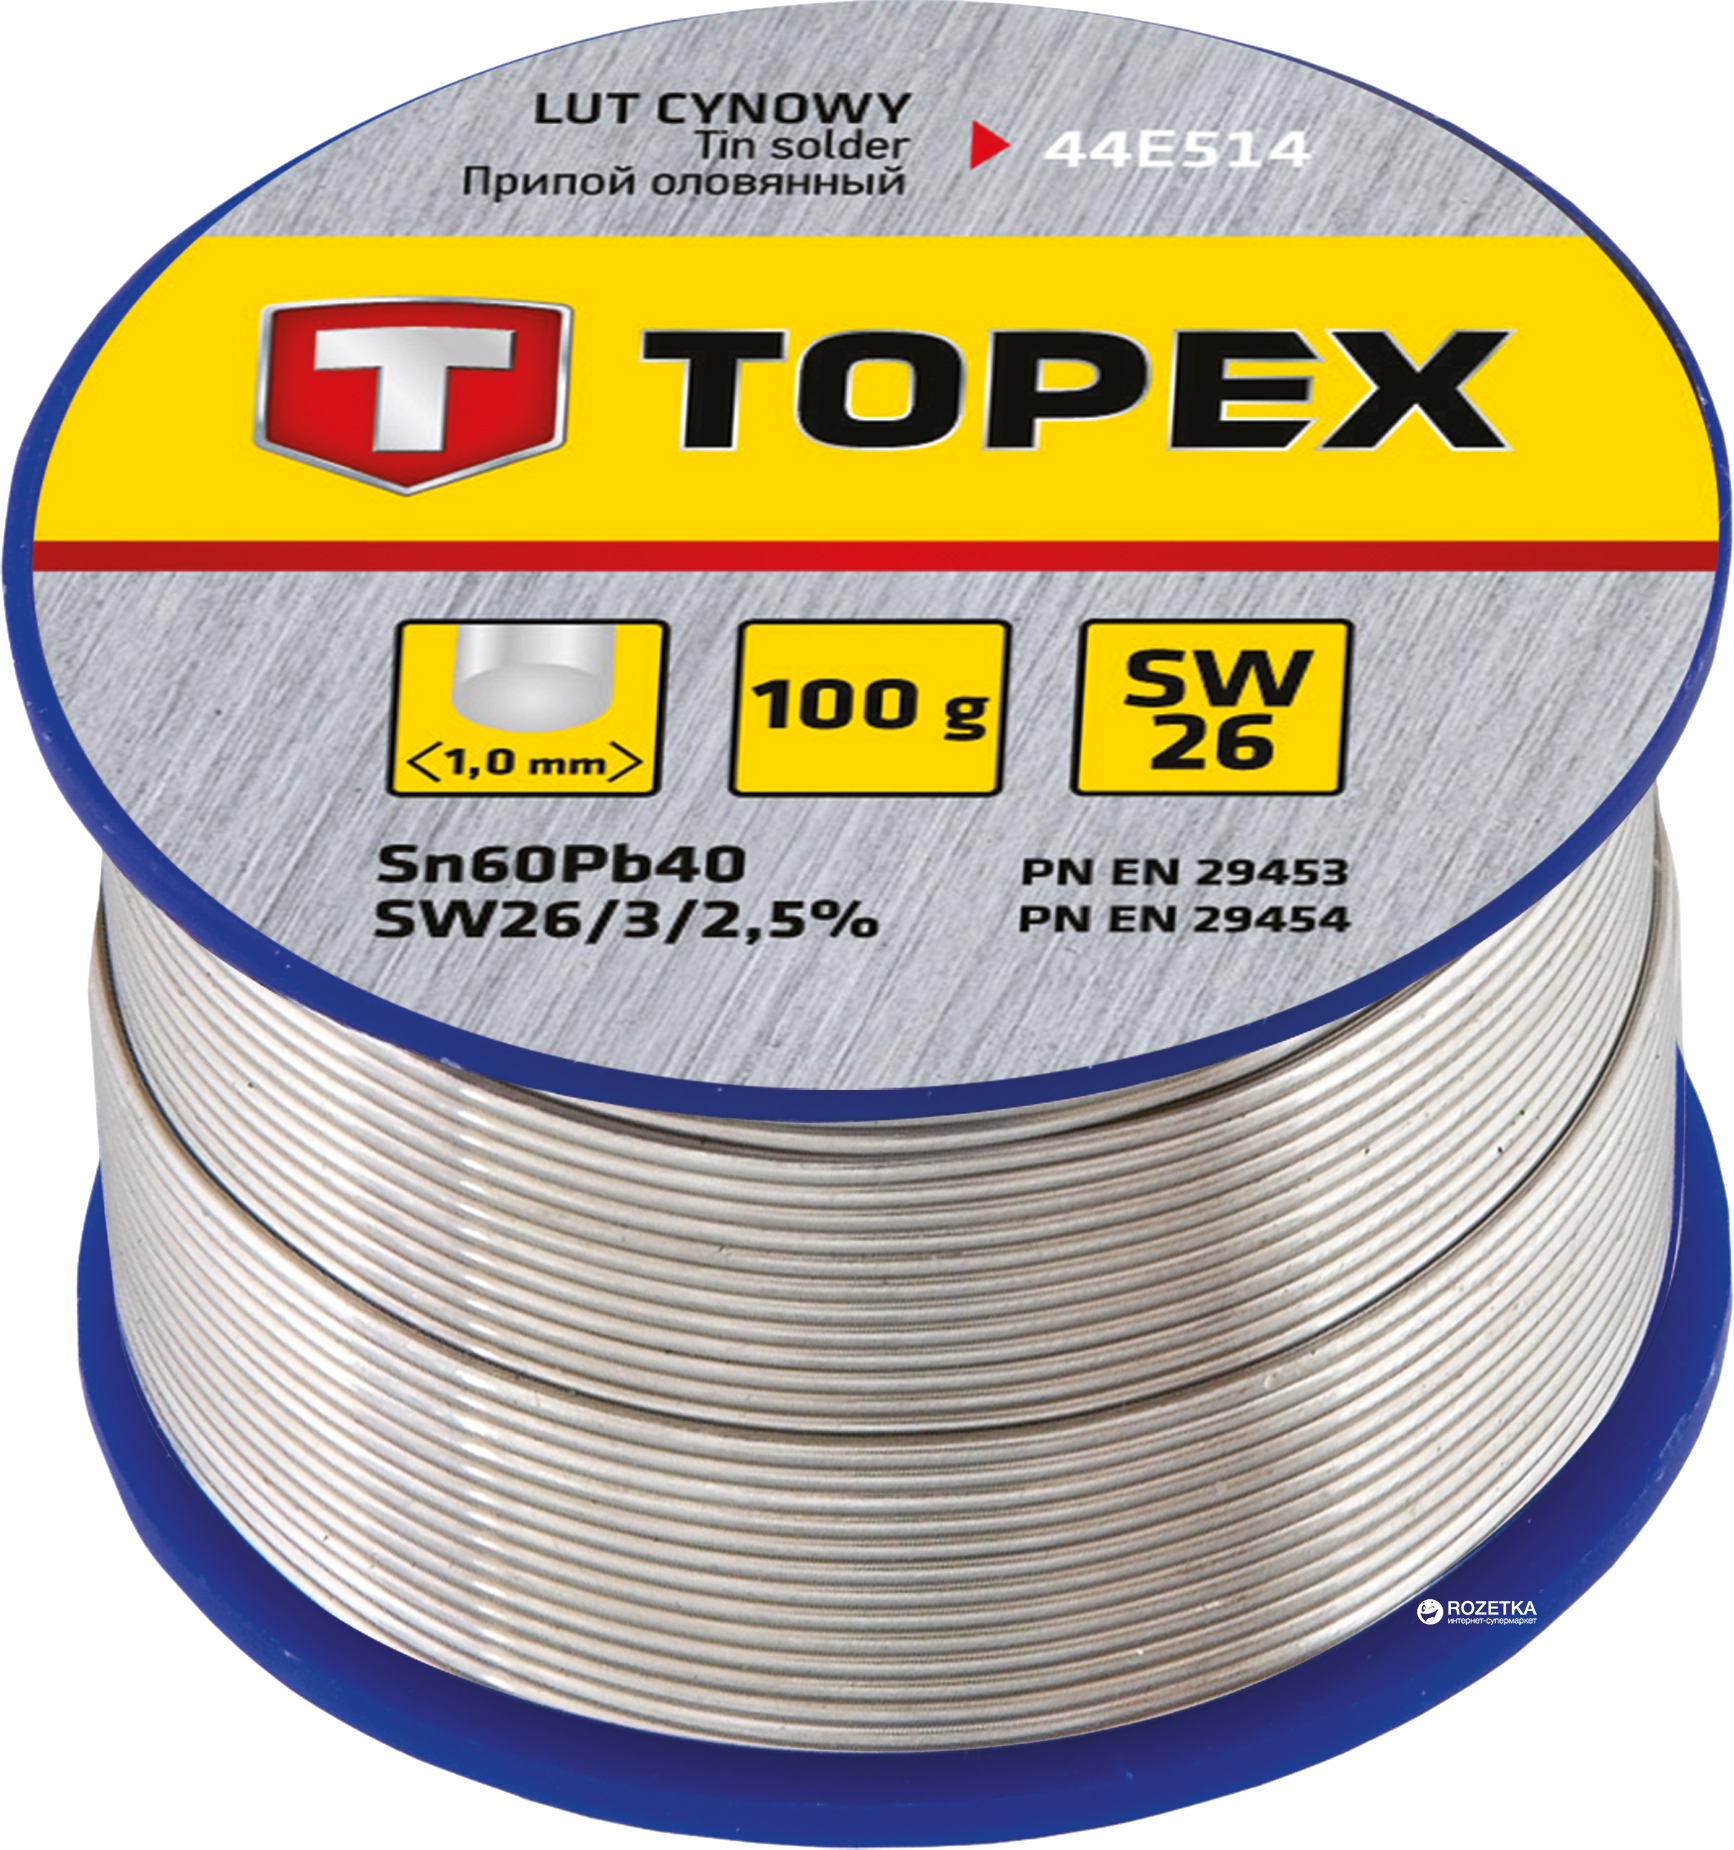 Припій (люта) TOPEX 60% олова 1 мм 100 г